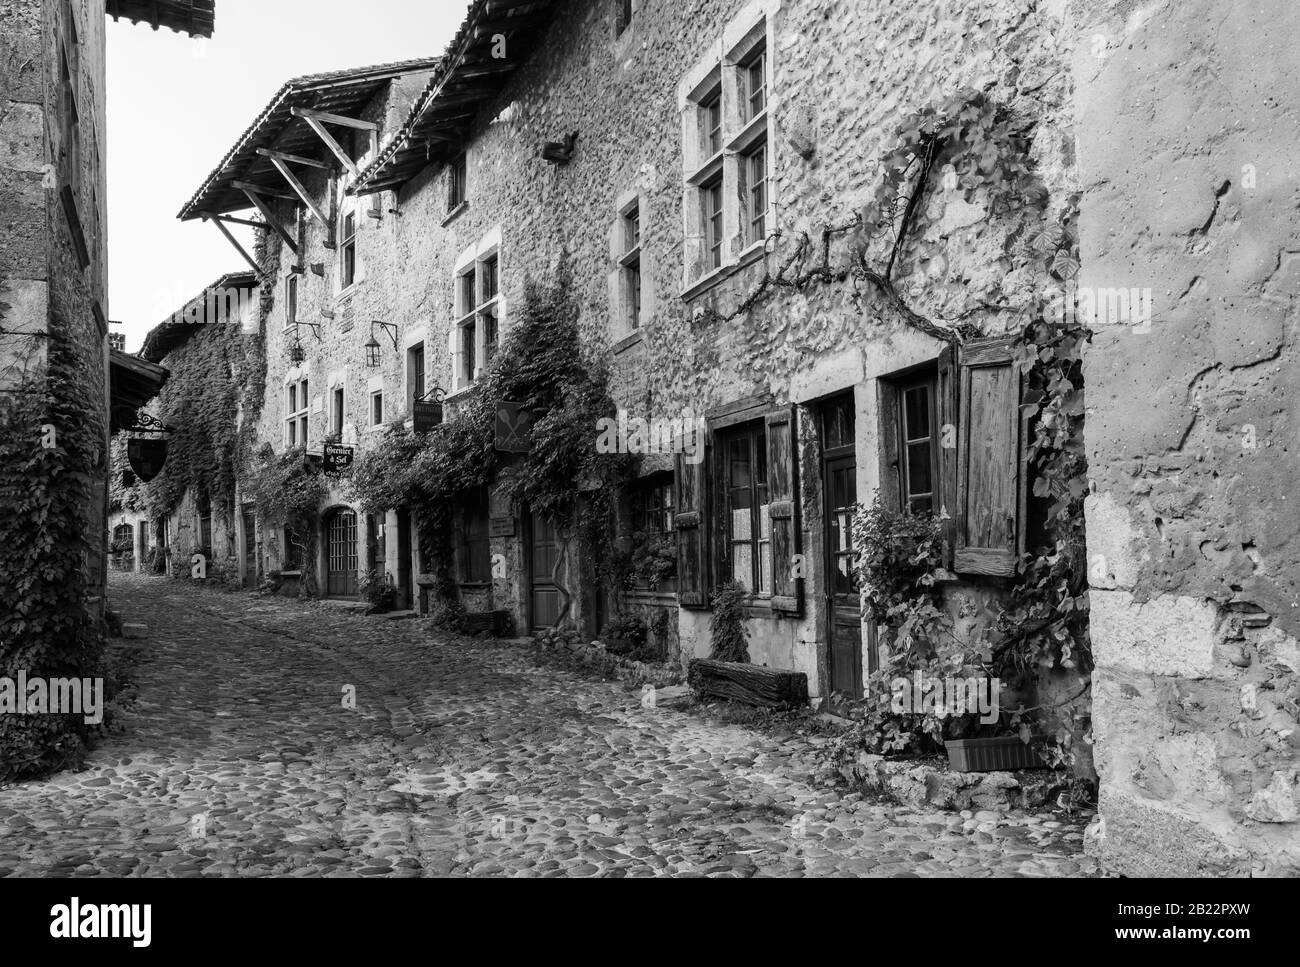 Die Rue des Rondes in Pérouges, einer mittelalterlichen ummauerten Stadt 30 km nordöstlich von Lyon, hat den Status eines der schönsten Dörfer Frankreichs verliehen. Stockfoto